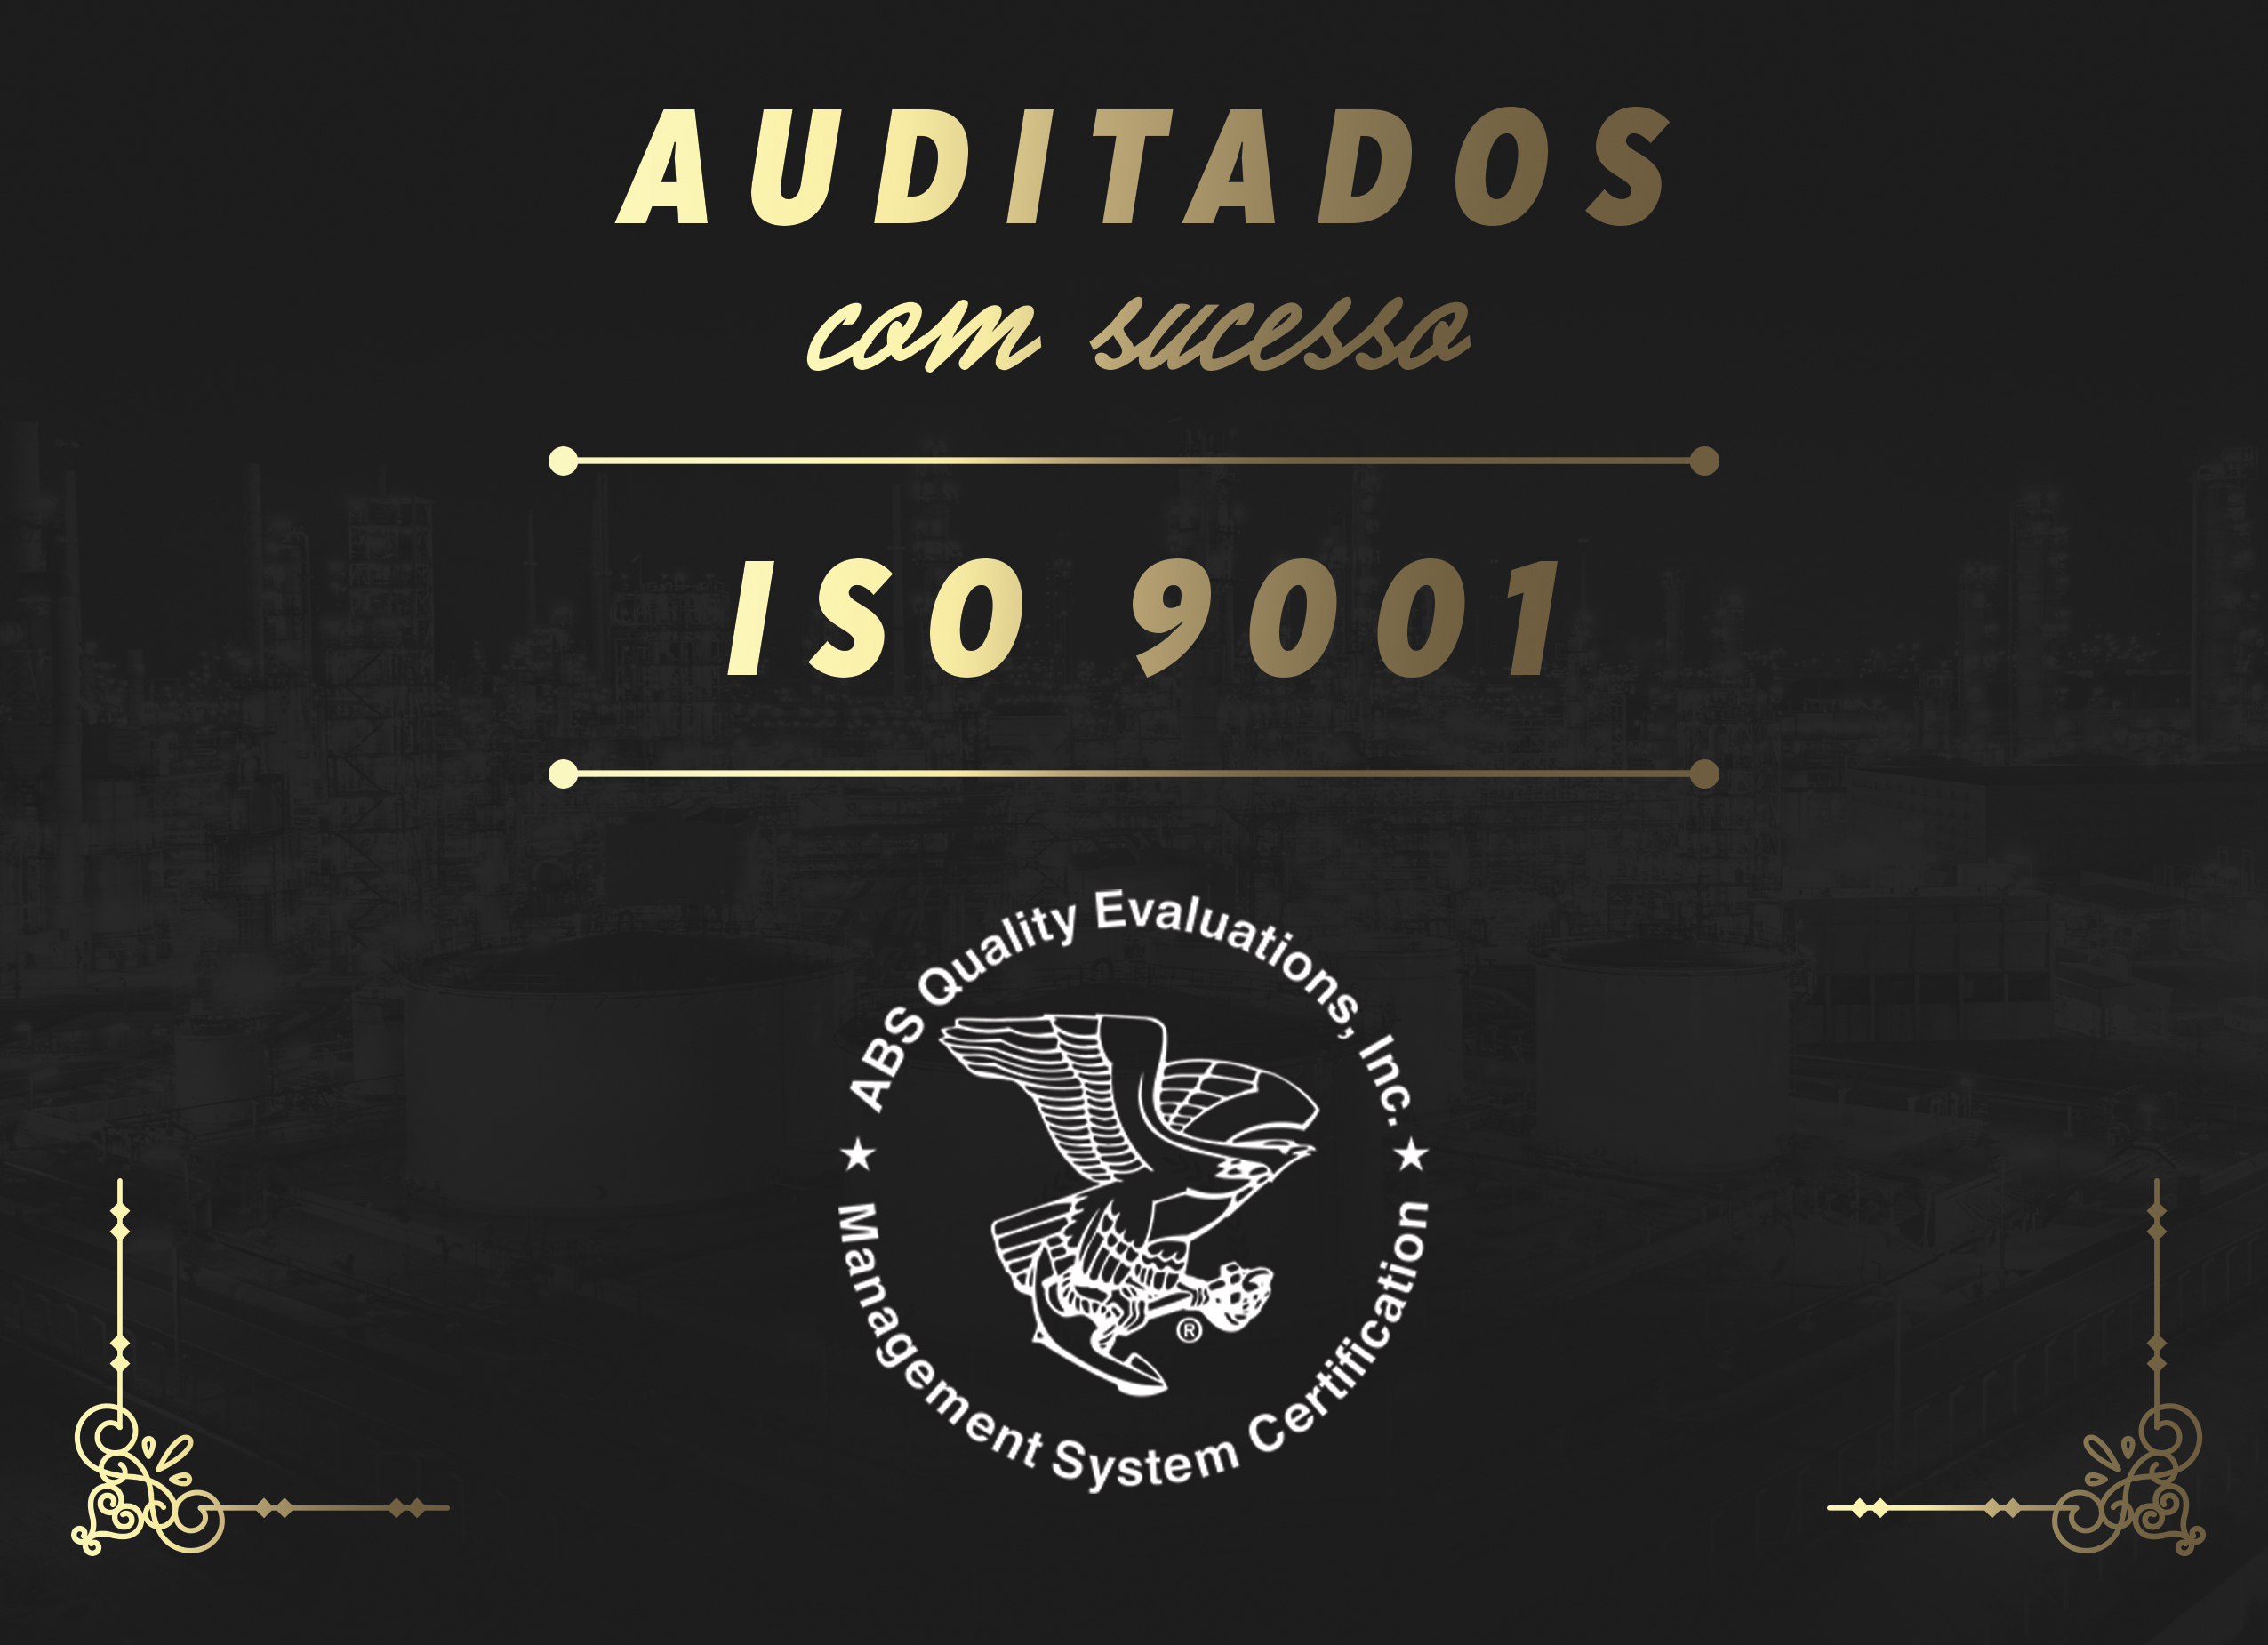 ISO 9001 Auditados com Sucesso